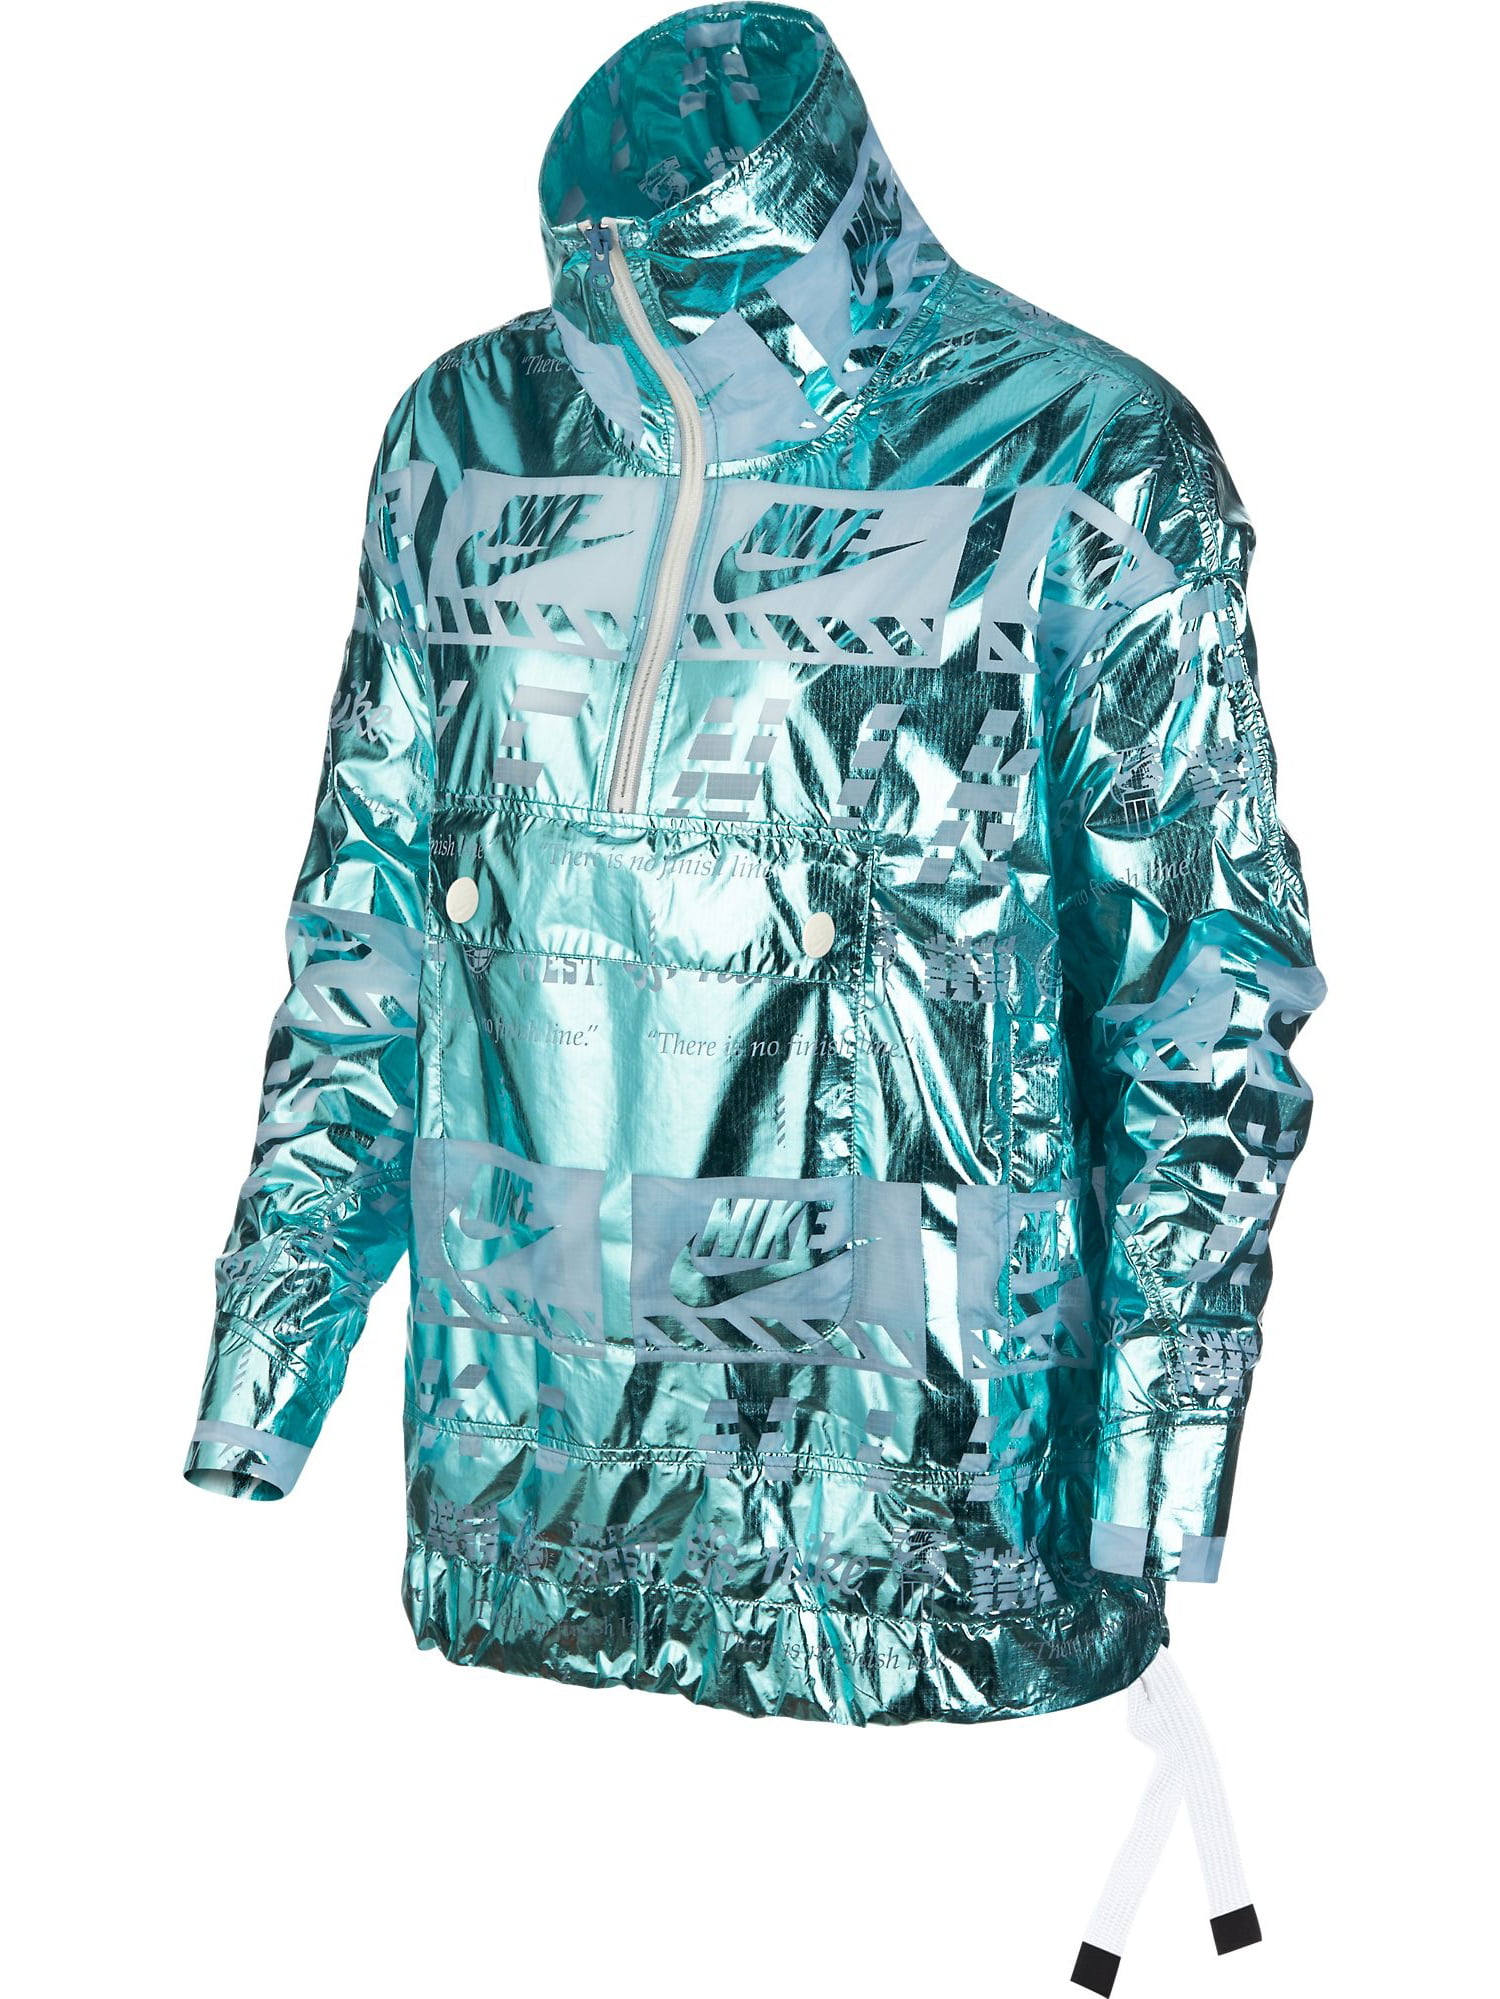 Nike Sportswear Metallic Half-Zip Jacket Ocean Bliss/White 914210-452 Walmart.com